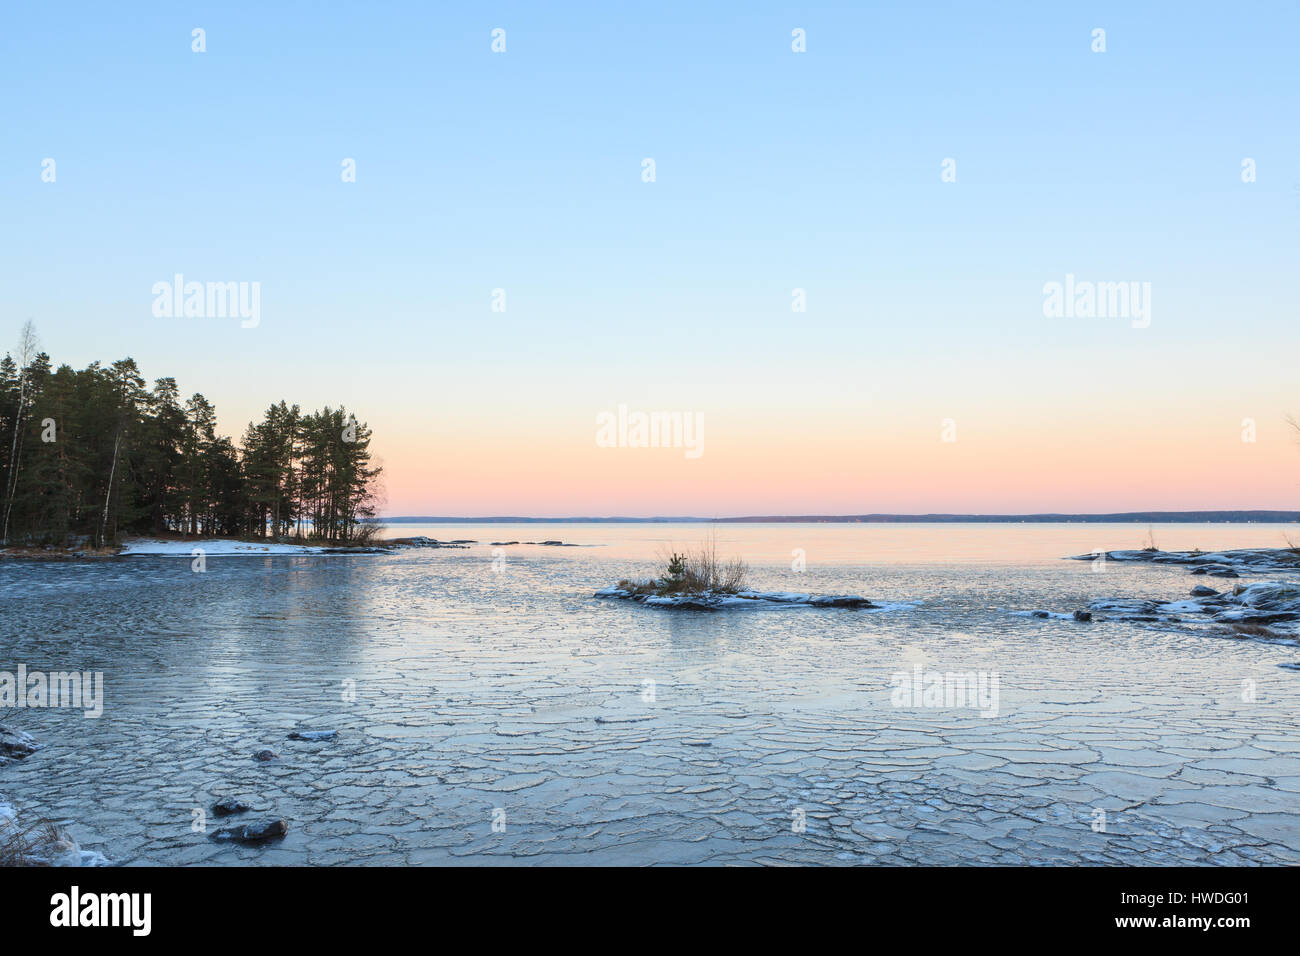 Bloques de hielo sobre el lago congelado al atardecer Foto de stock